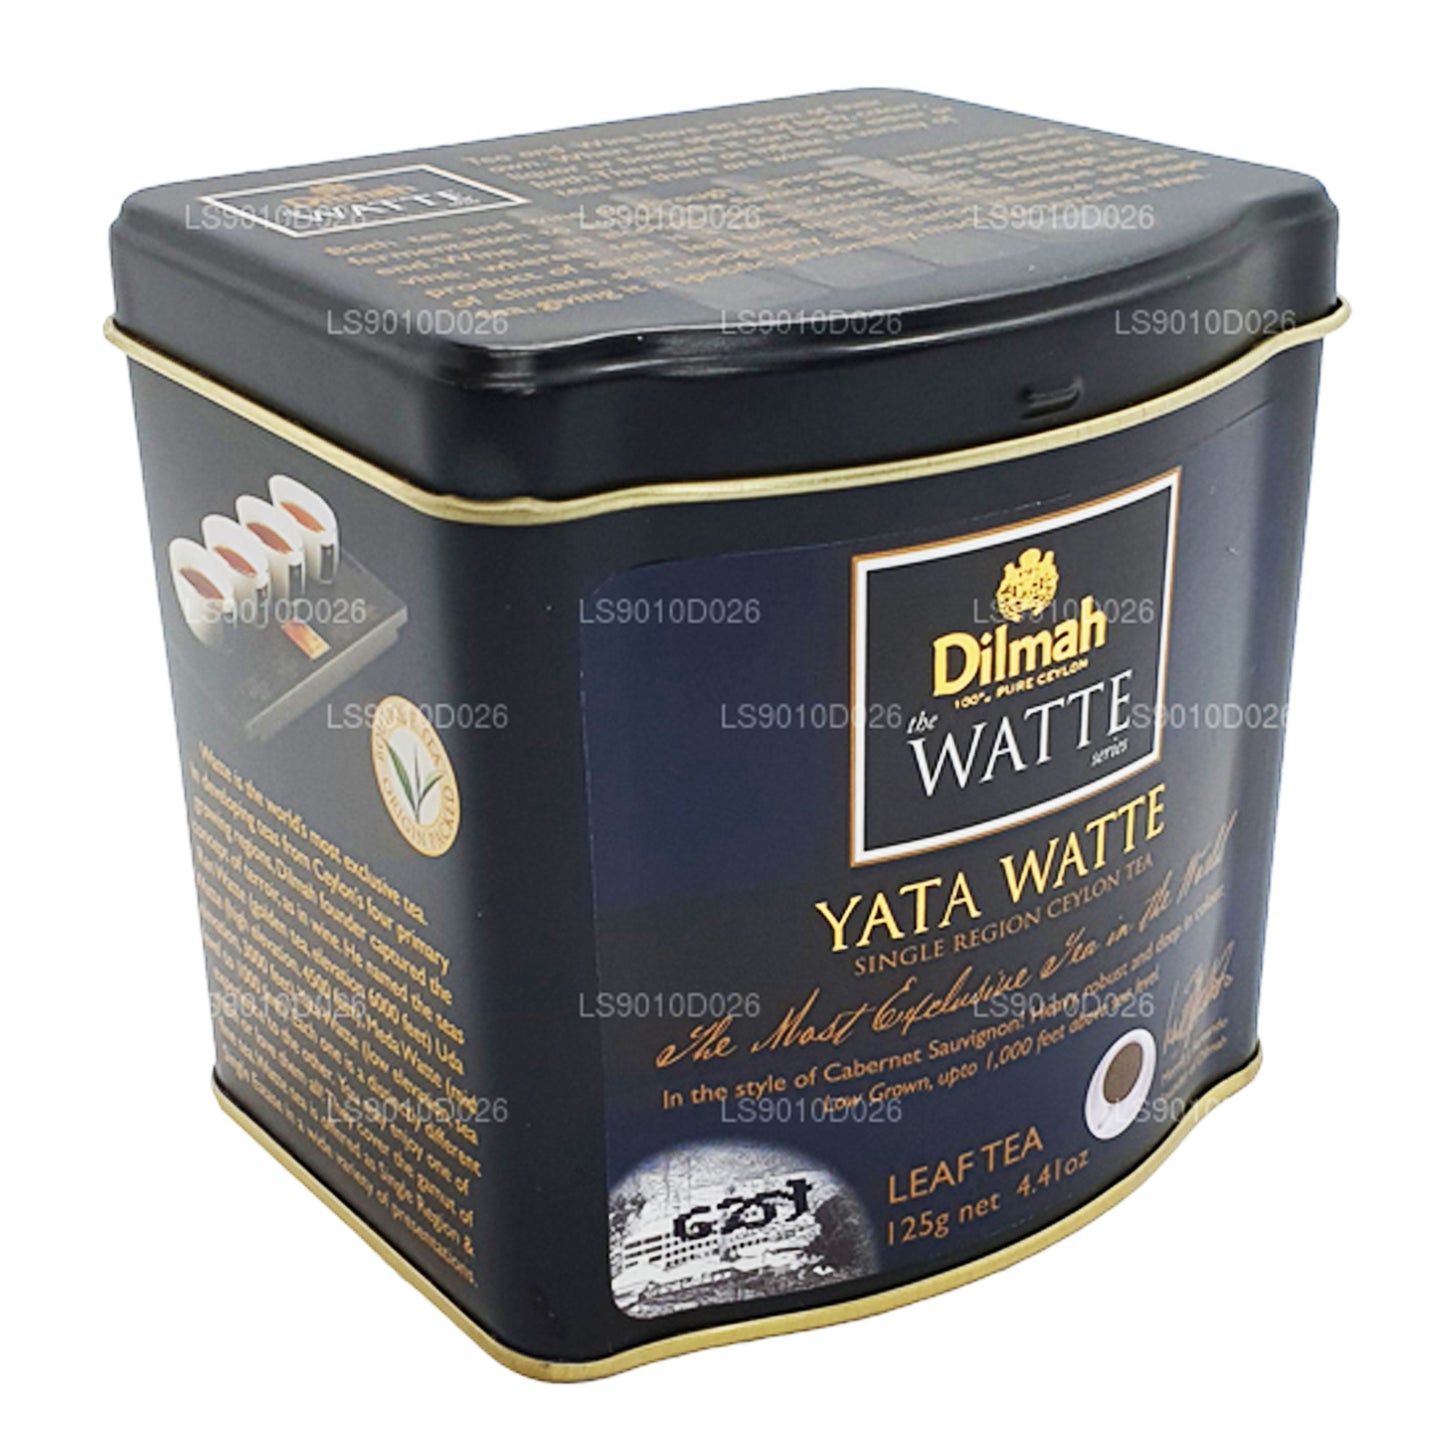 Листовой чай Дилма Ята Ватте (125 г)